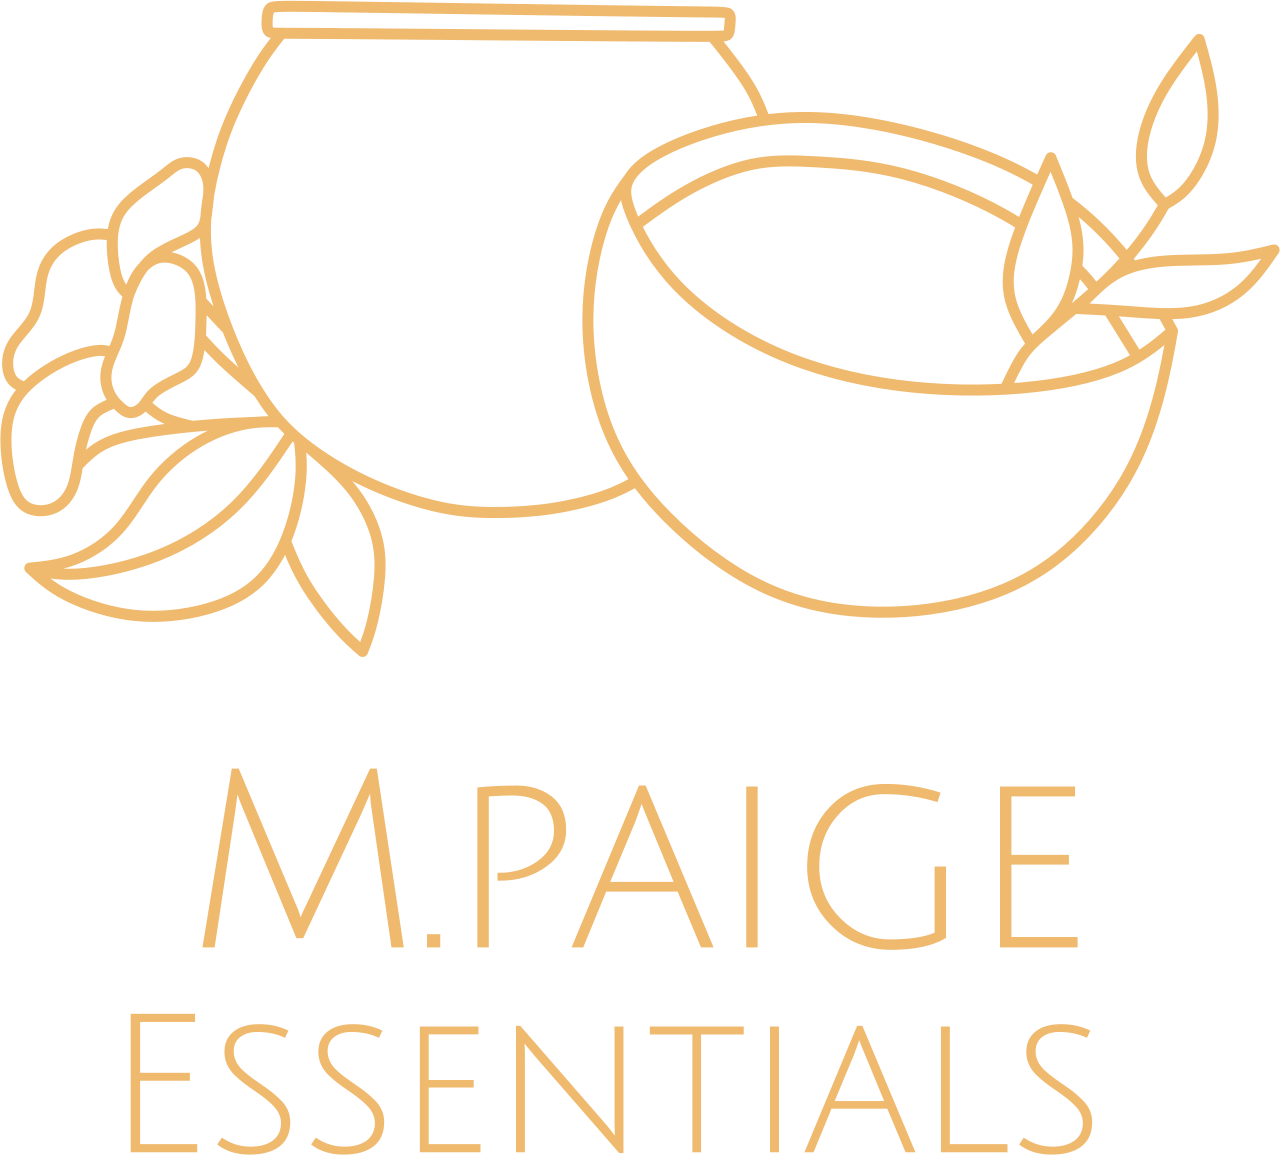 M.paige's logo